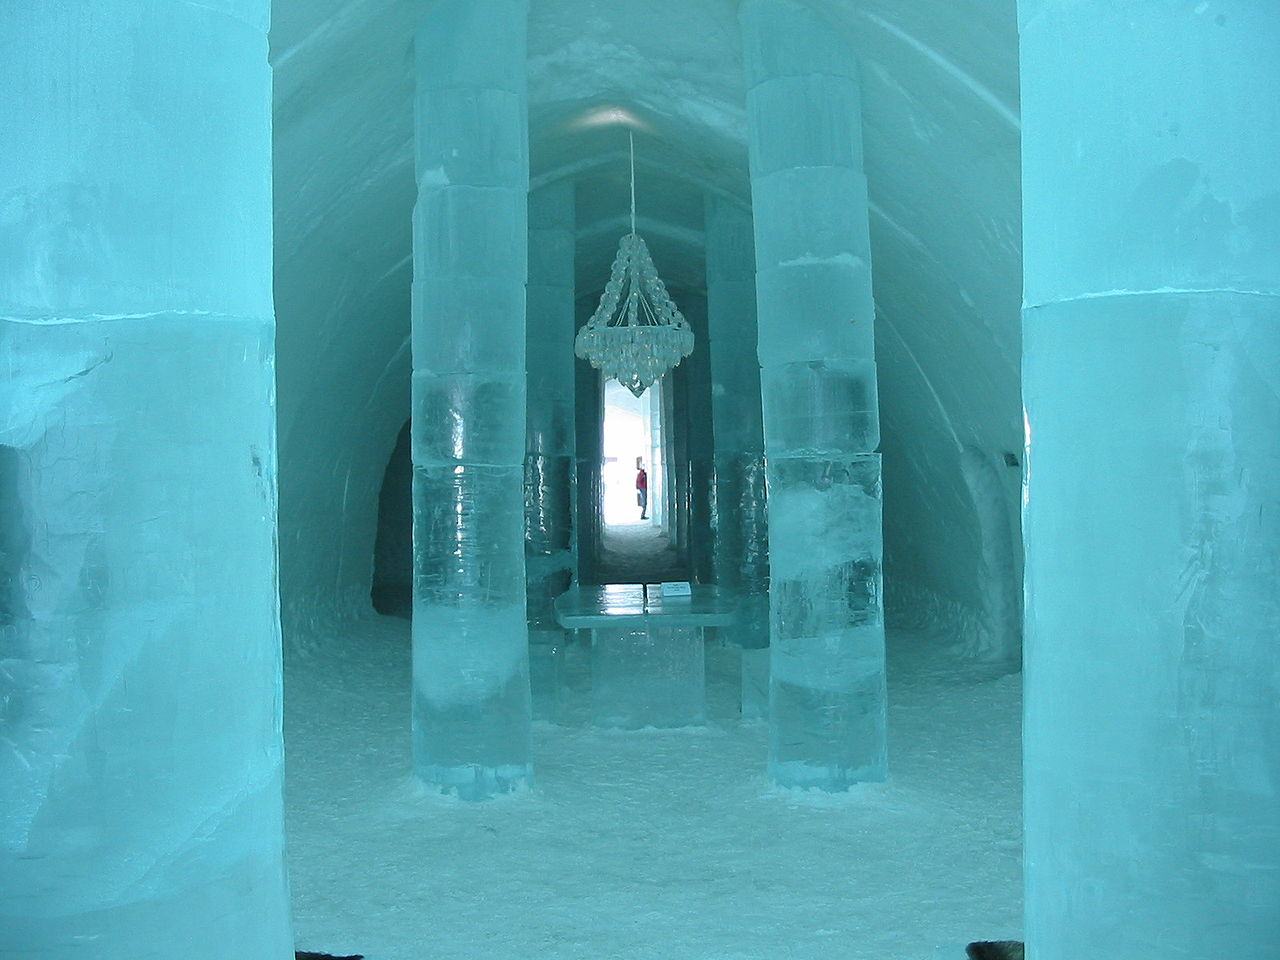 Obrázek ledove kralovstvi